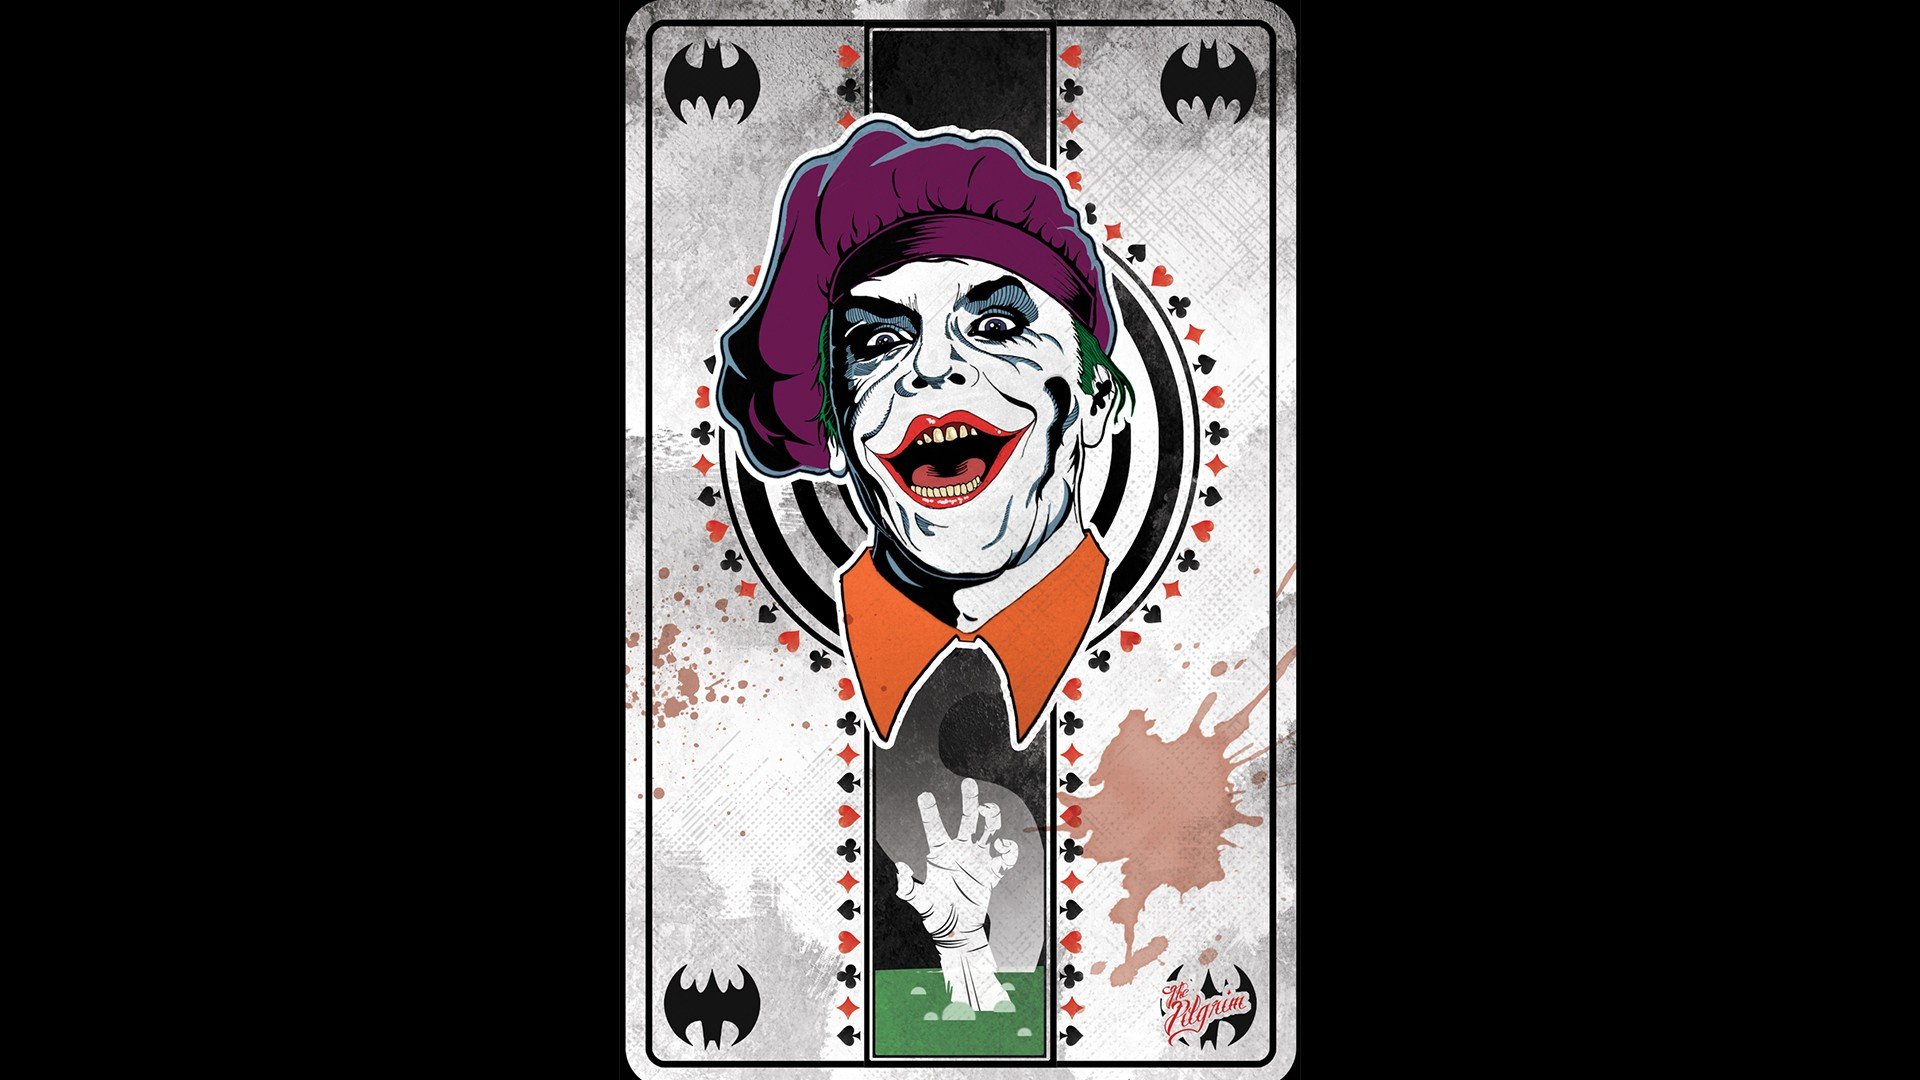 Joker Hd Wallpaper For Mobile Phones